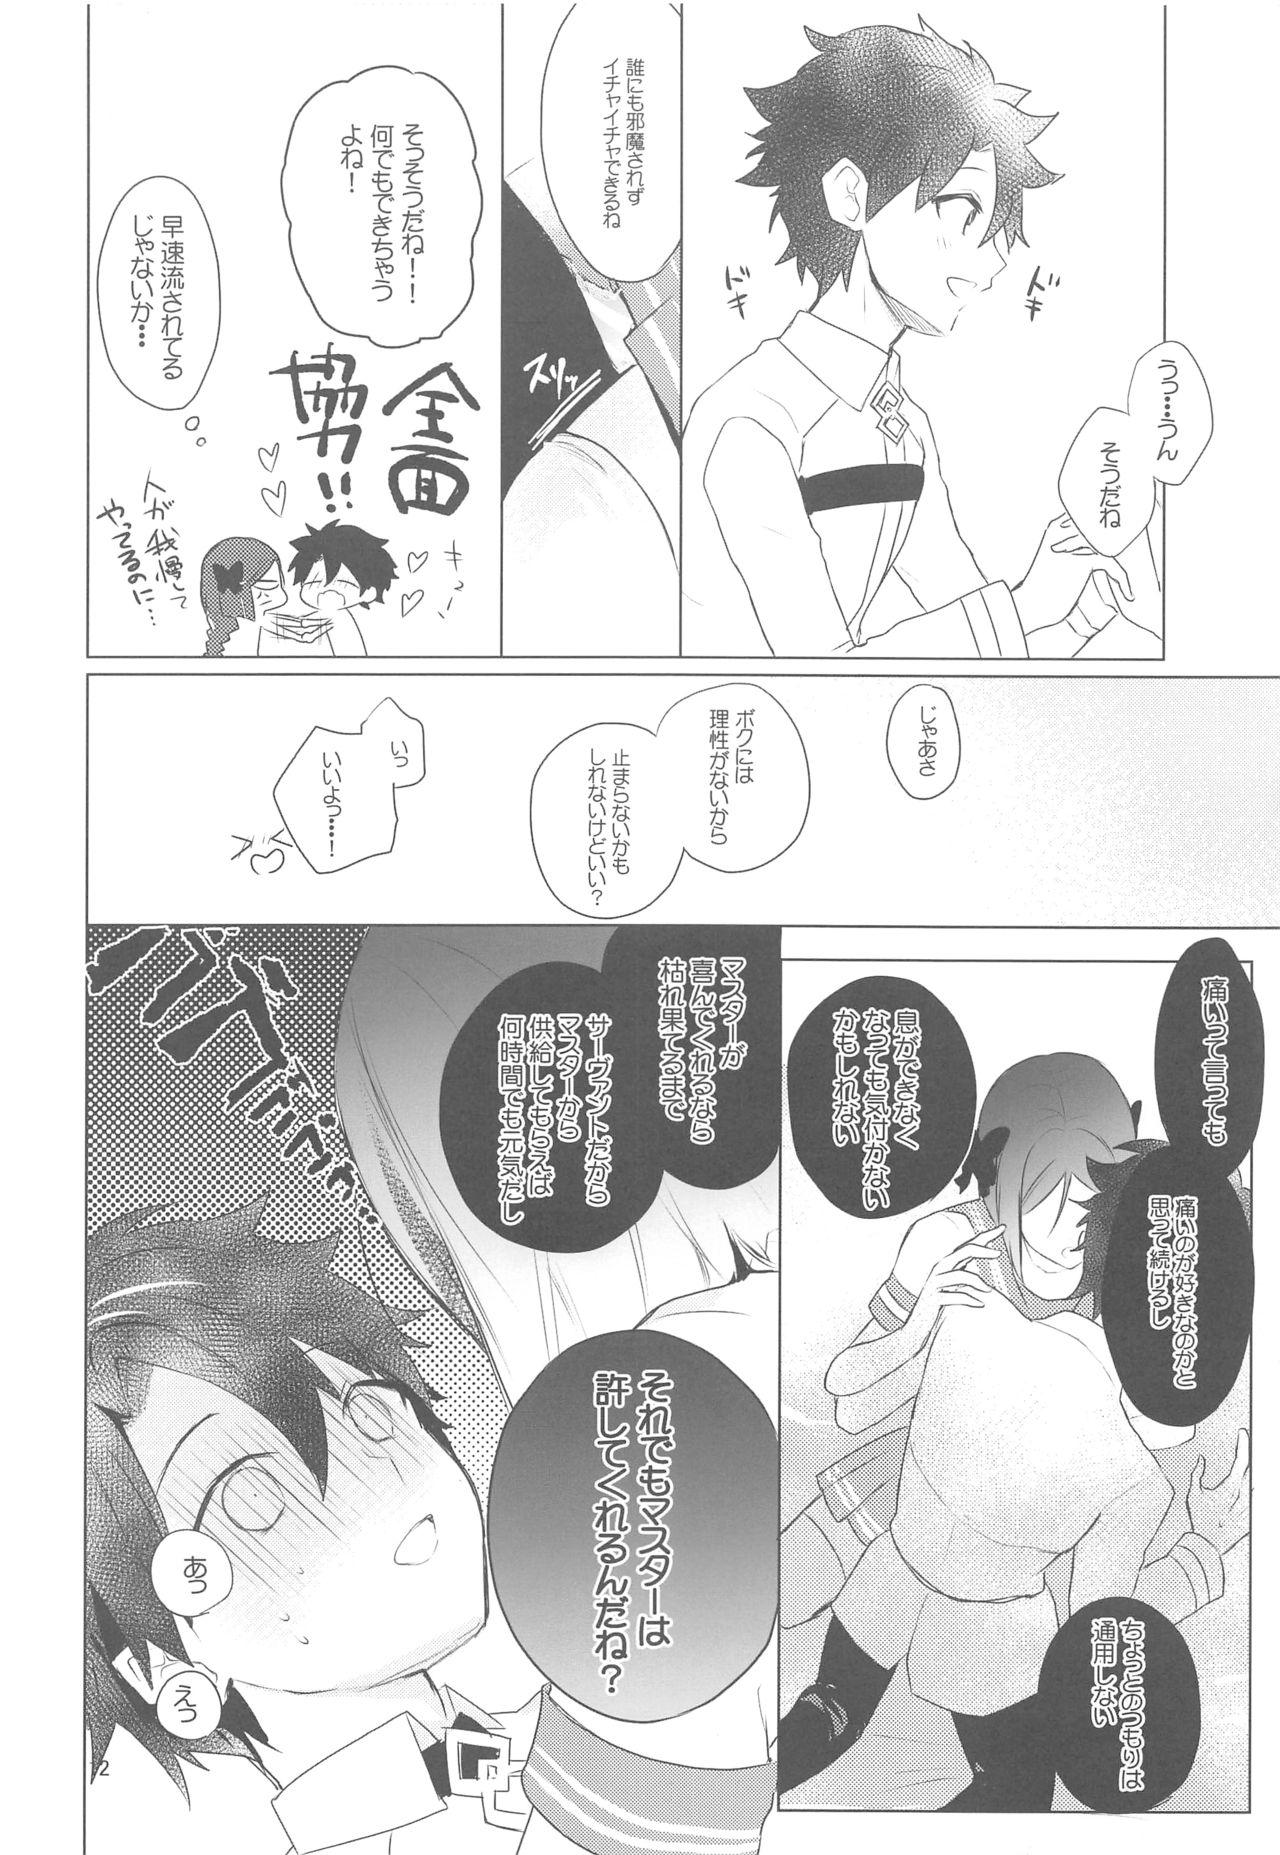 Gaypawn Hoshi 4 Servant ga Eraberu tte Iukara Kakugo Kimeru Mae ni Waver-chan ni o Aite Shite Moratta Hanashi - Fate grand order Scene - Page 11